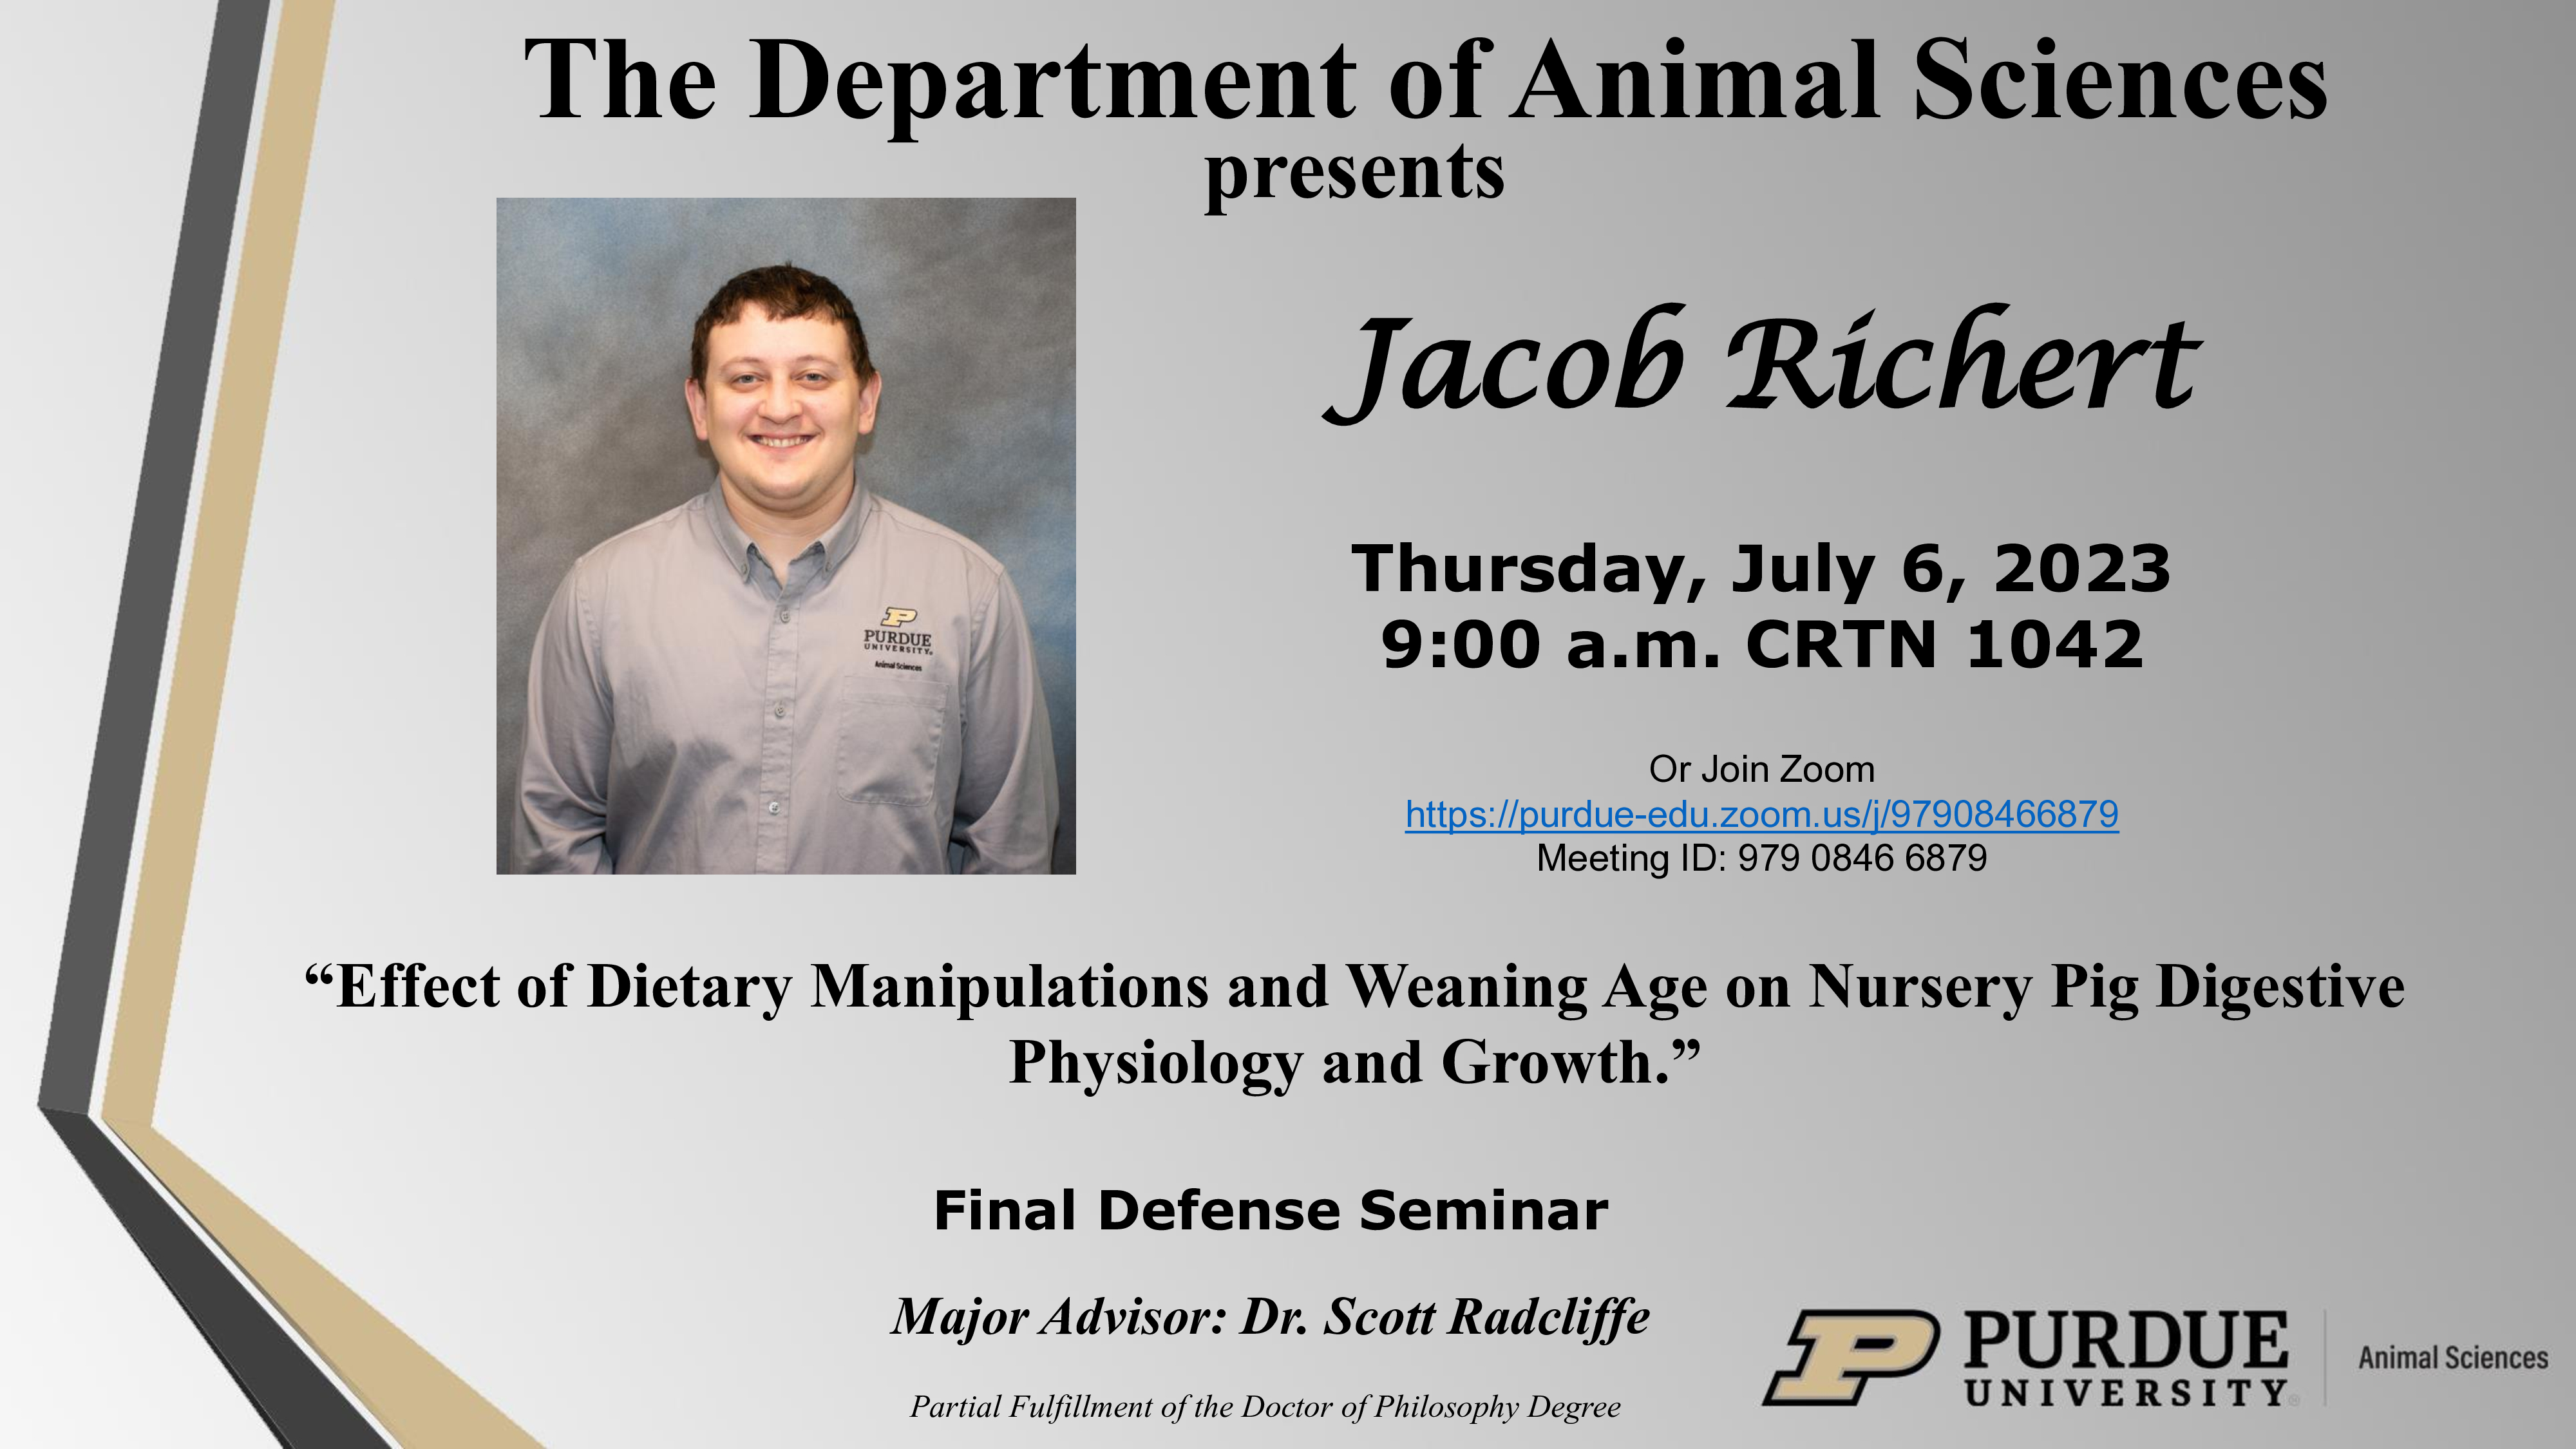 Jacob-Richert-Final-Defense-Seminar-Flyer.jpg